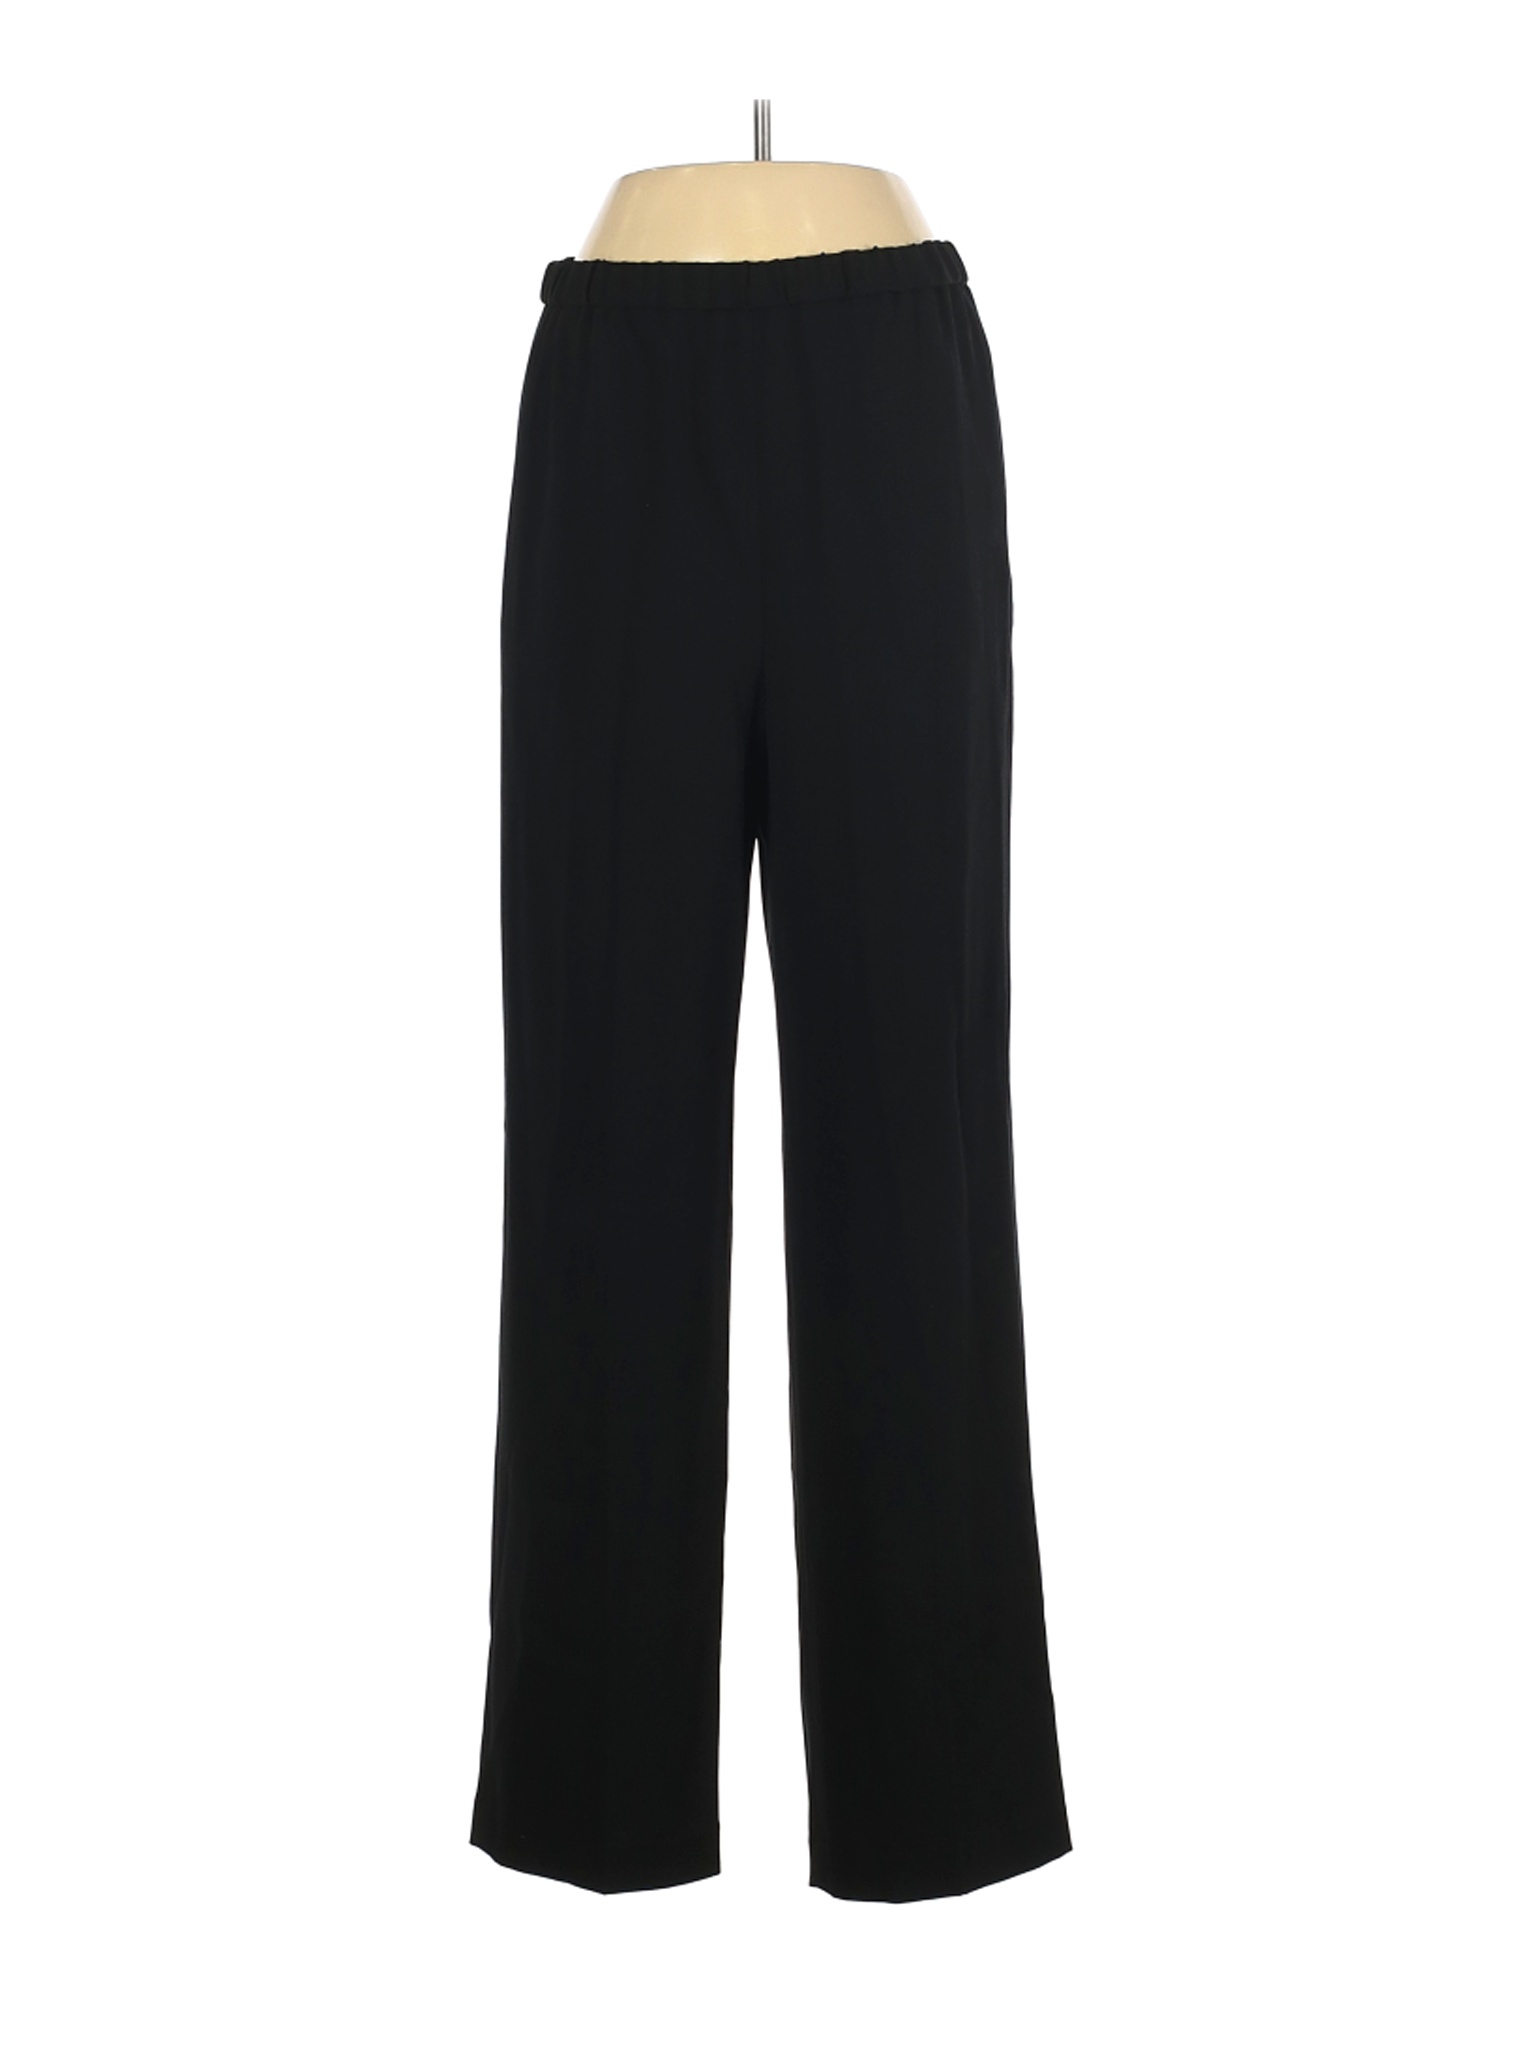 Babaton Women Black Casual Pants L | eBay